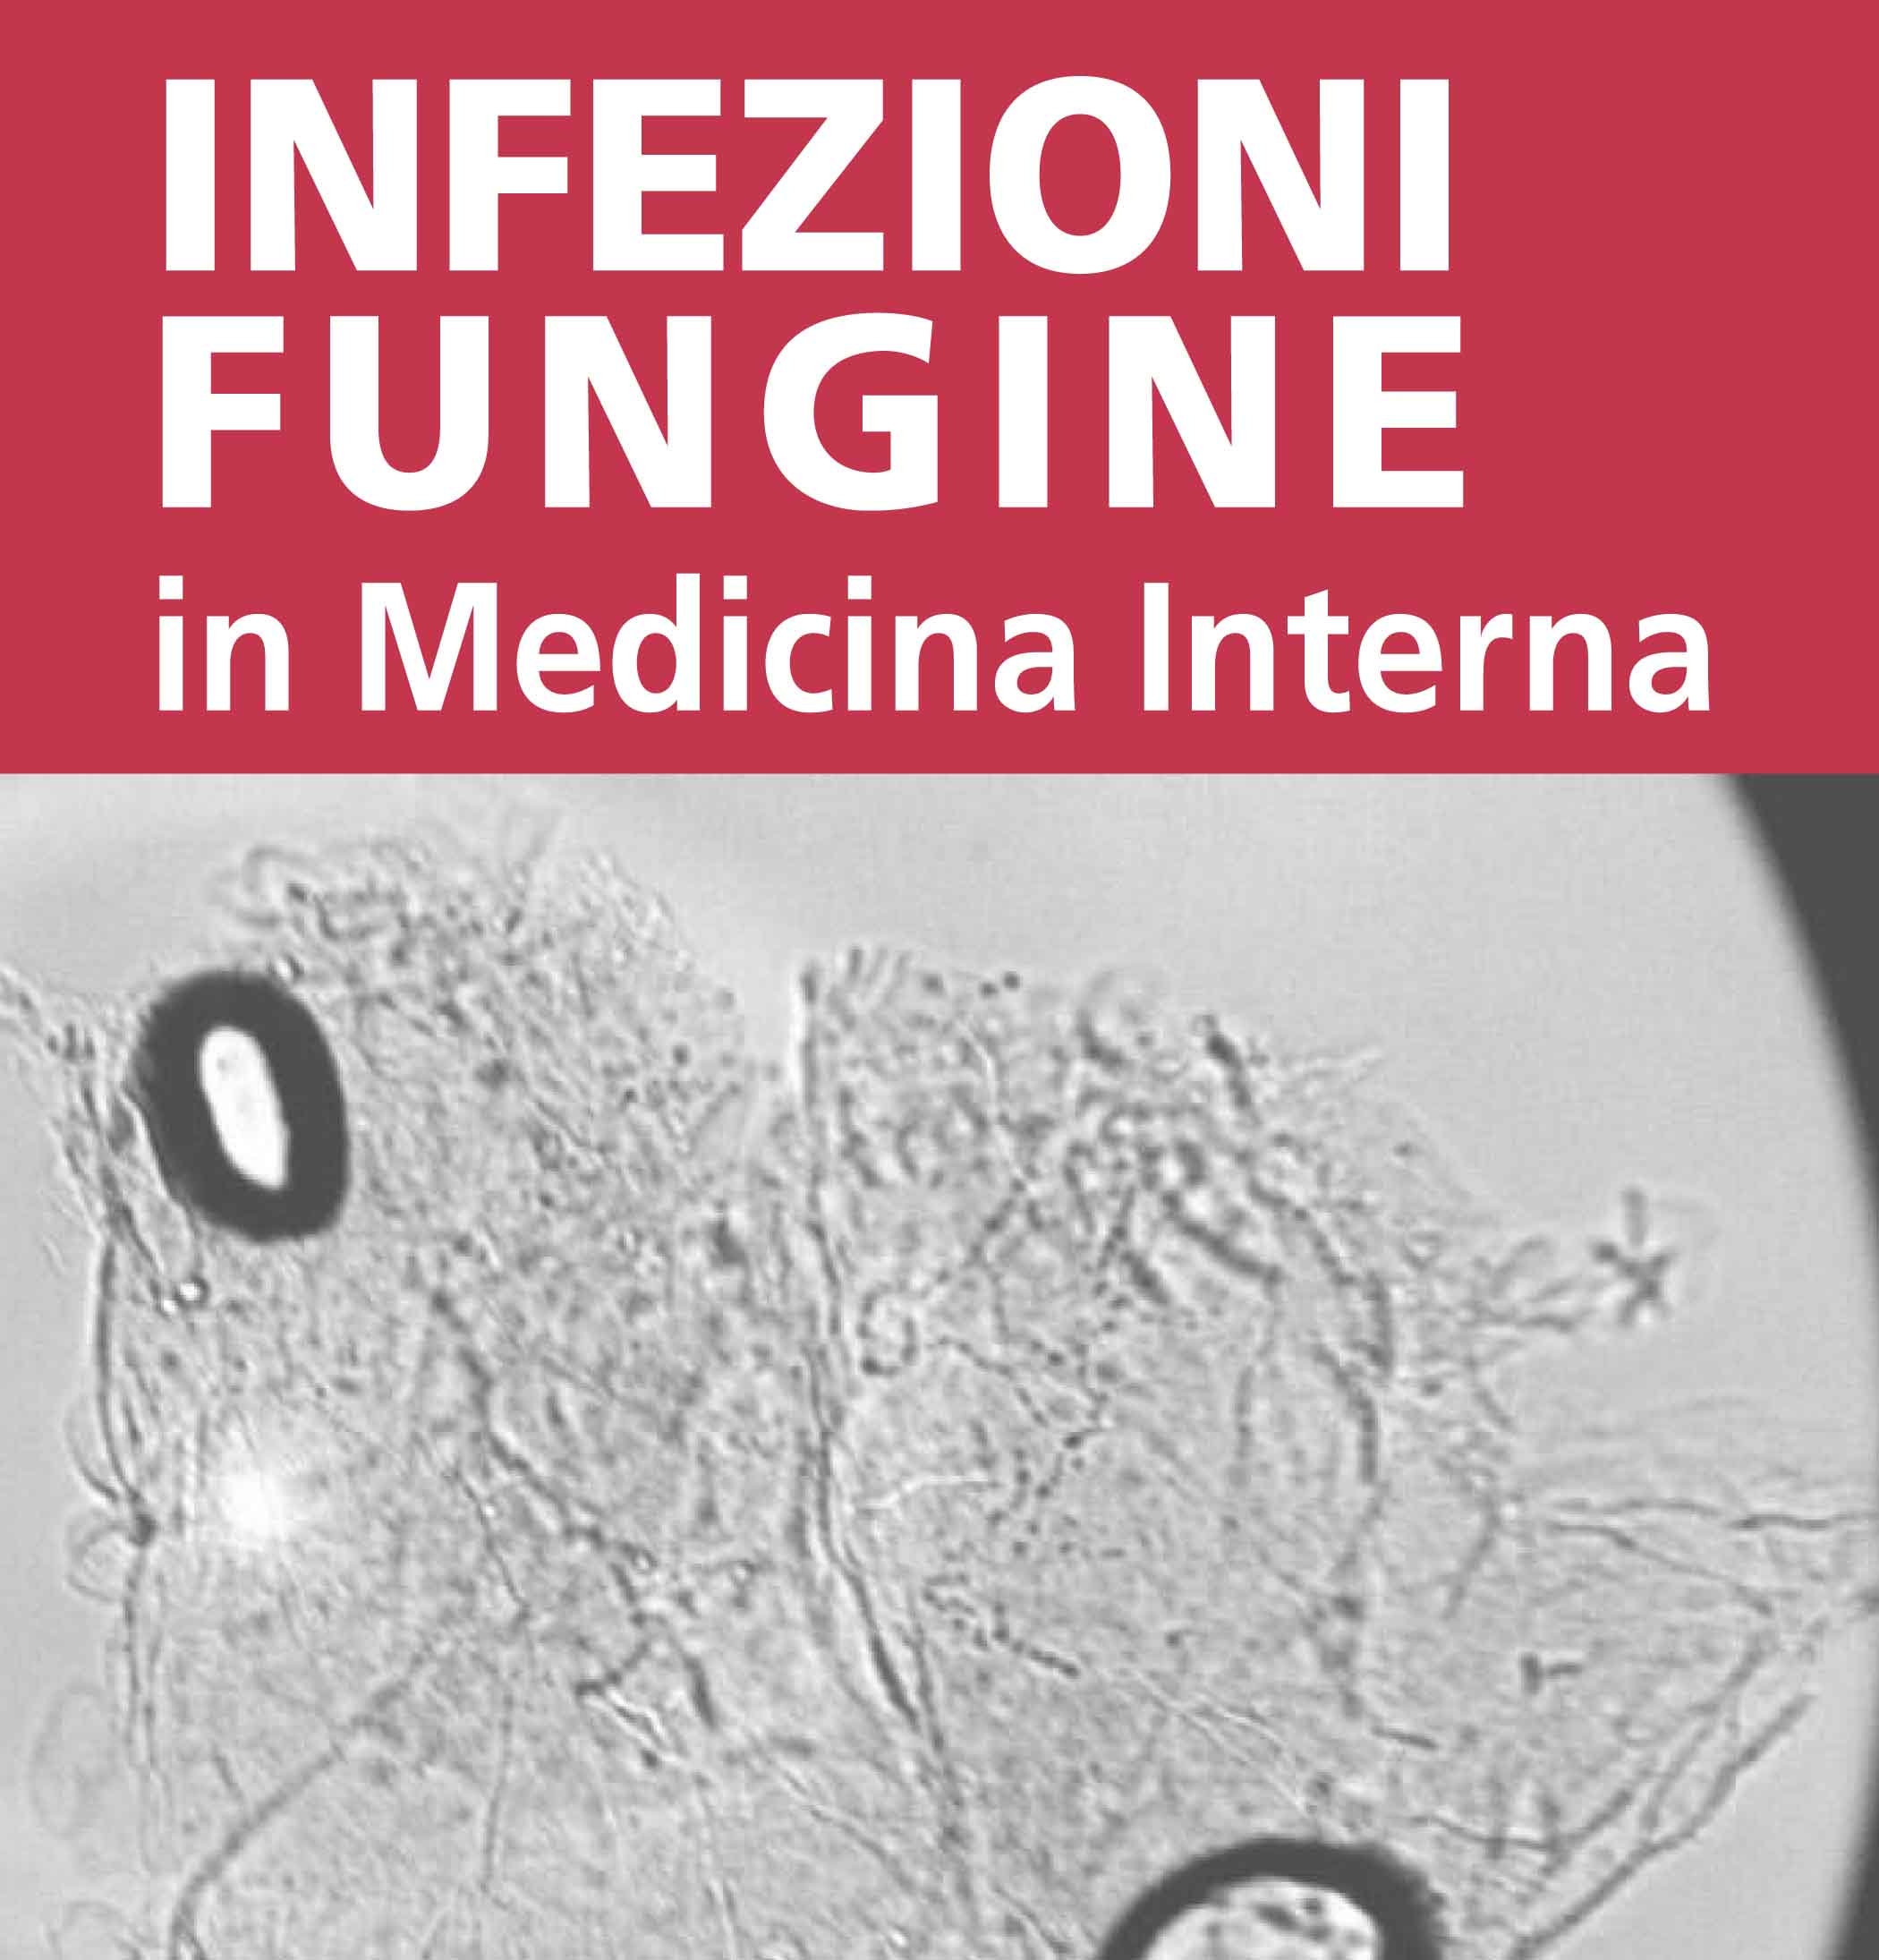 Infezioni fungine in Medicina Interna